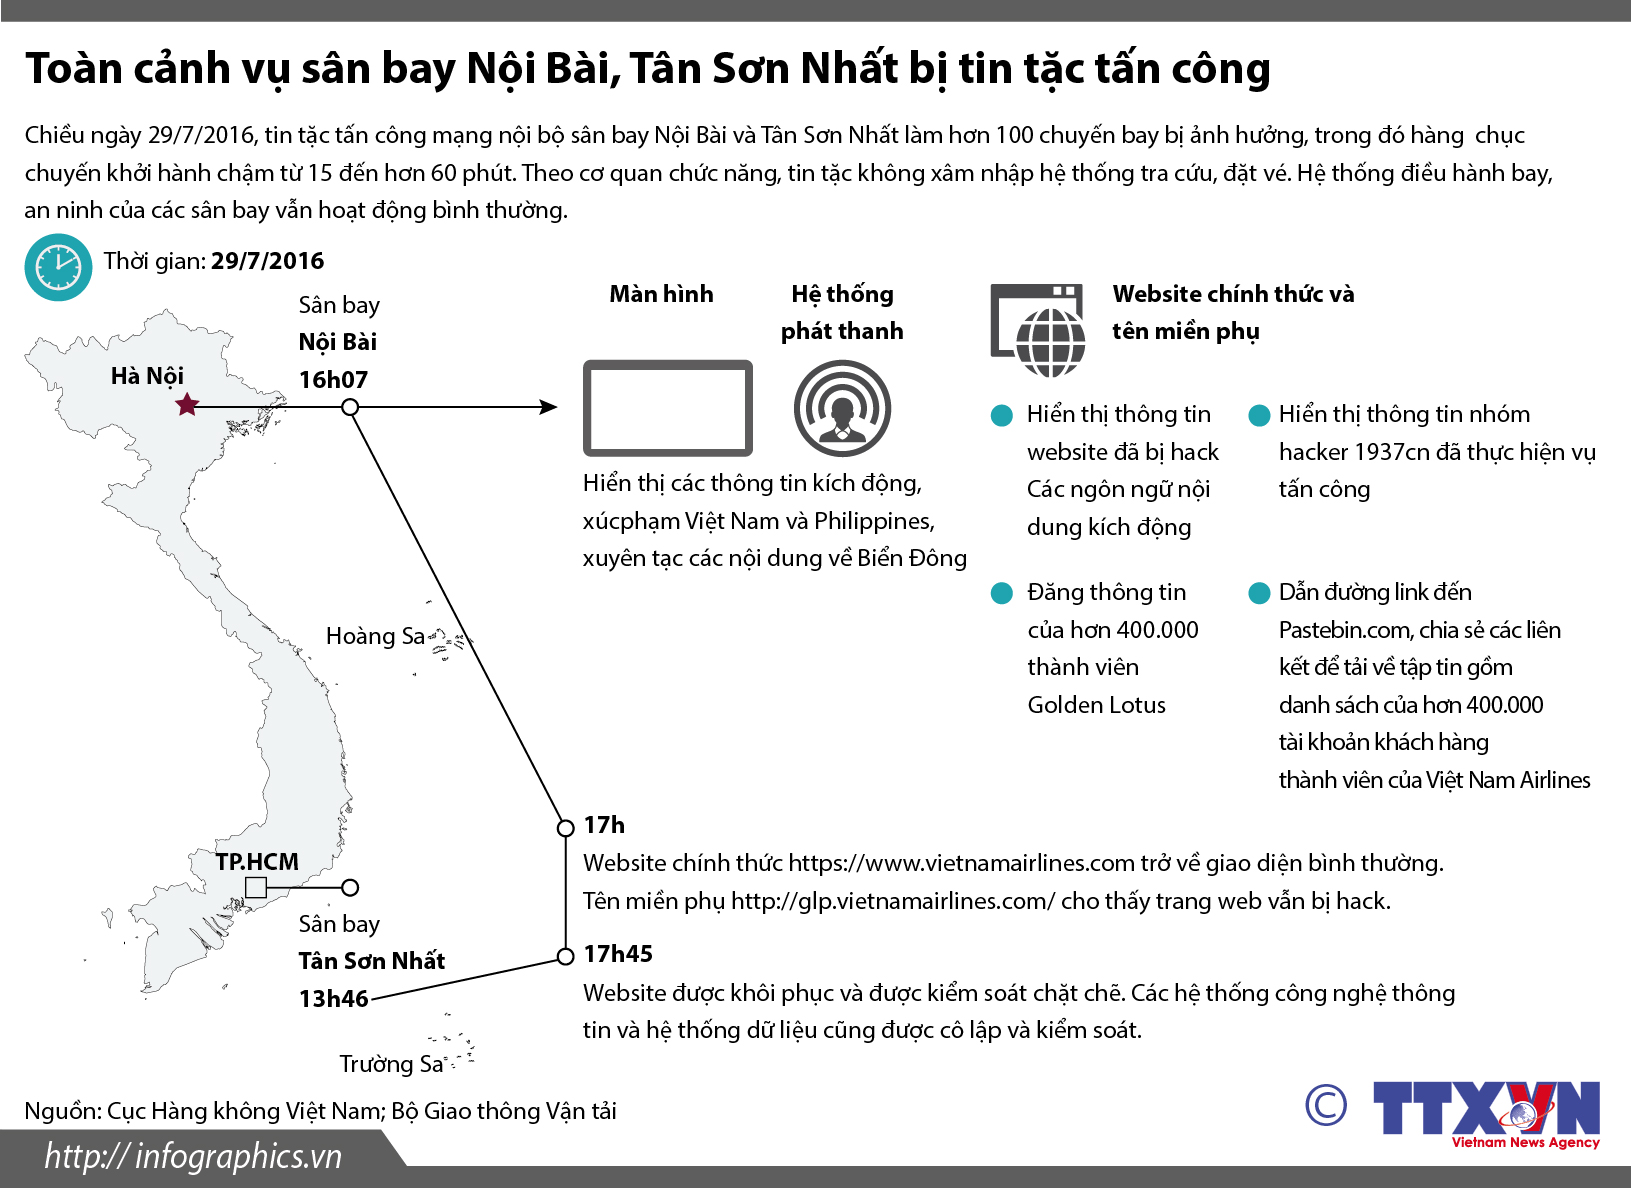 Đồ họa: Toàn cảnh vụ sân bay Nội Bài, Tân Sơn Nhất bị tin tặc tấn công